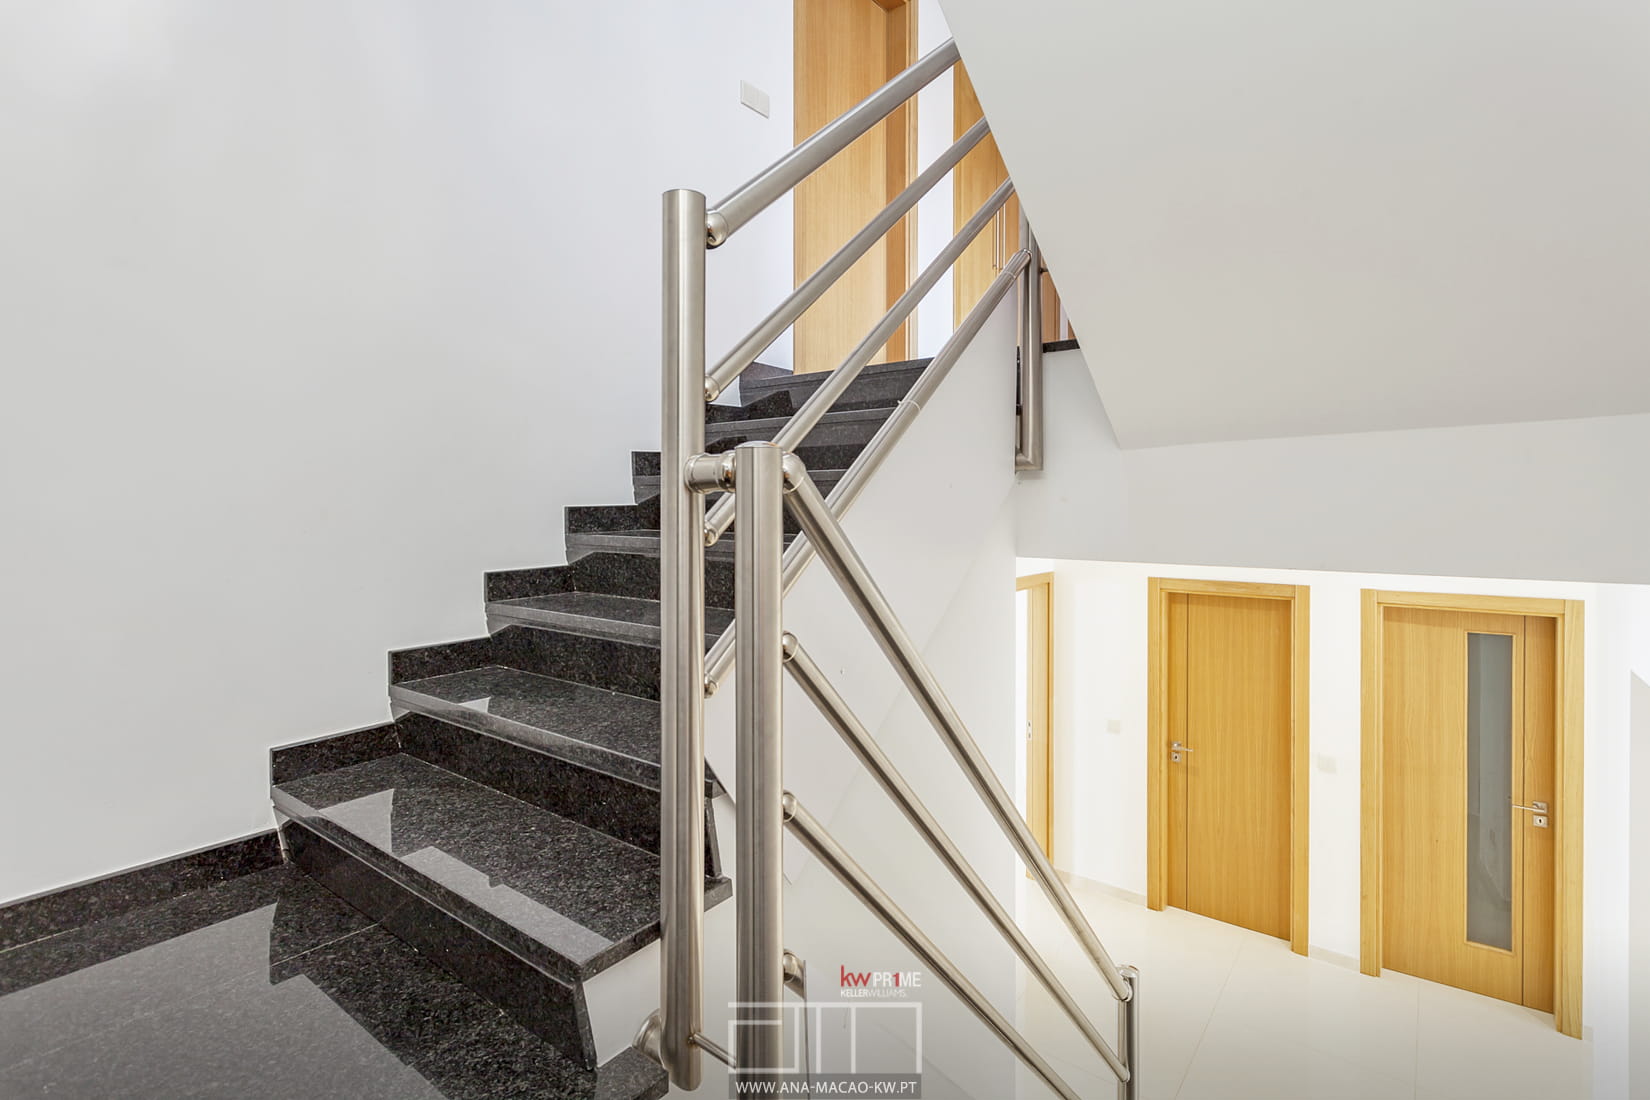 Escaliers d'accès aux étages supérieurs